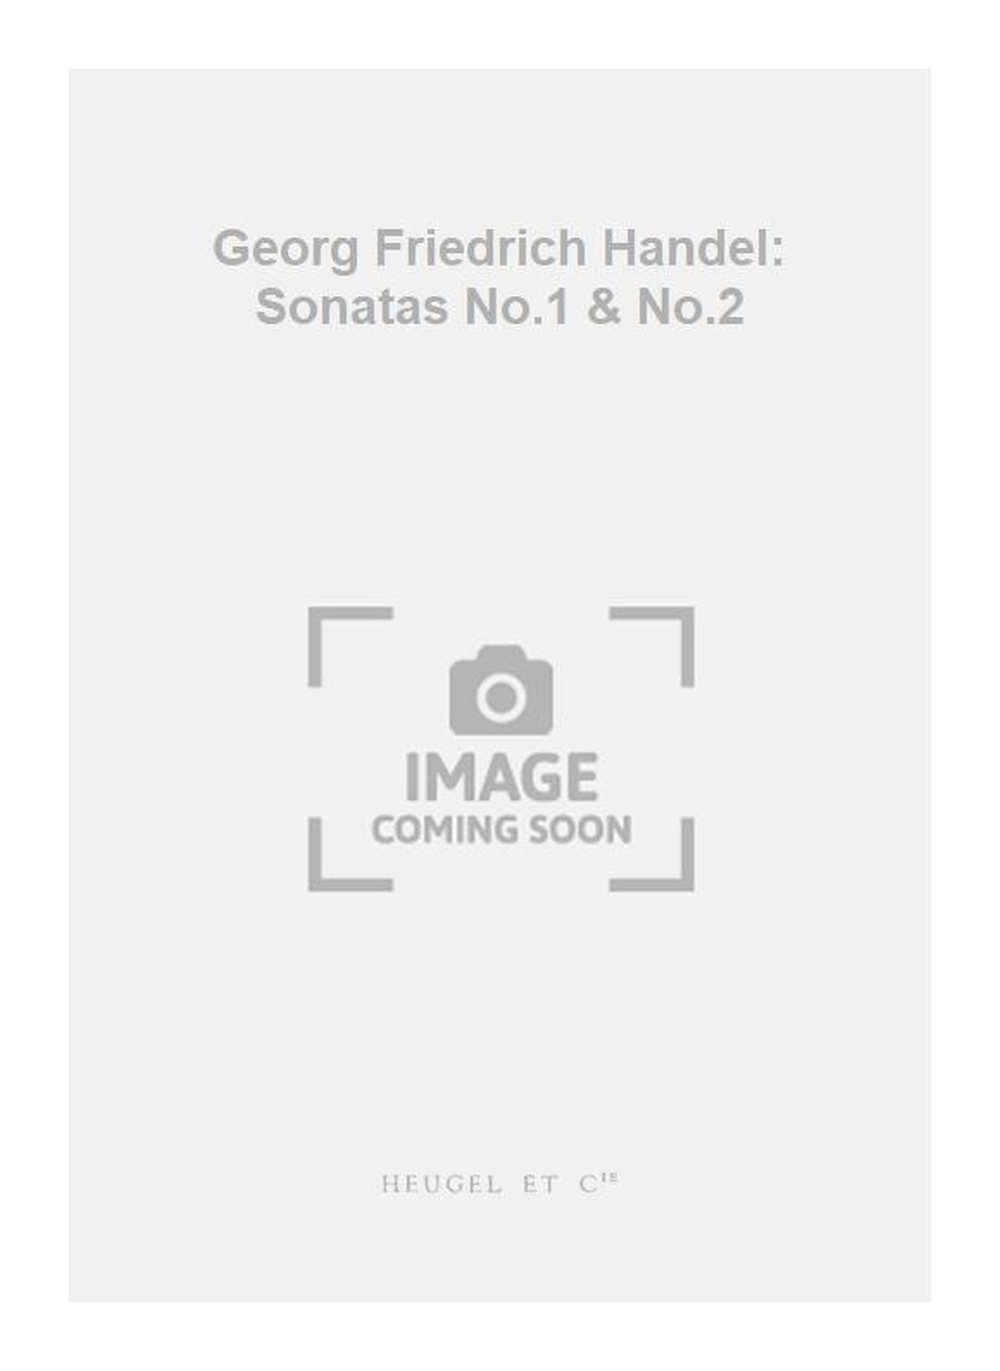 Georg Friedrich Händel: Georg Friedrich Handel: Sonatas No.1 & No.2